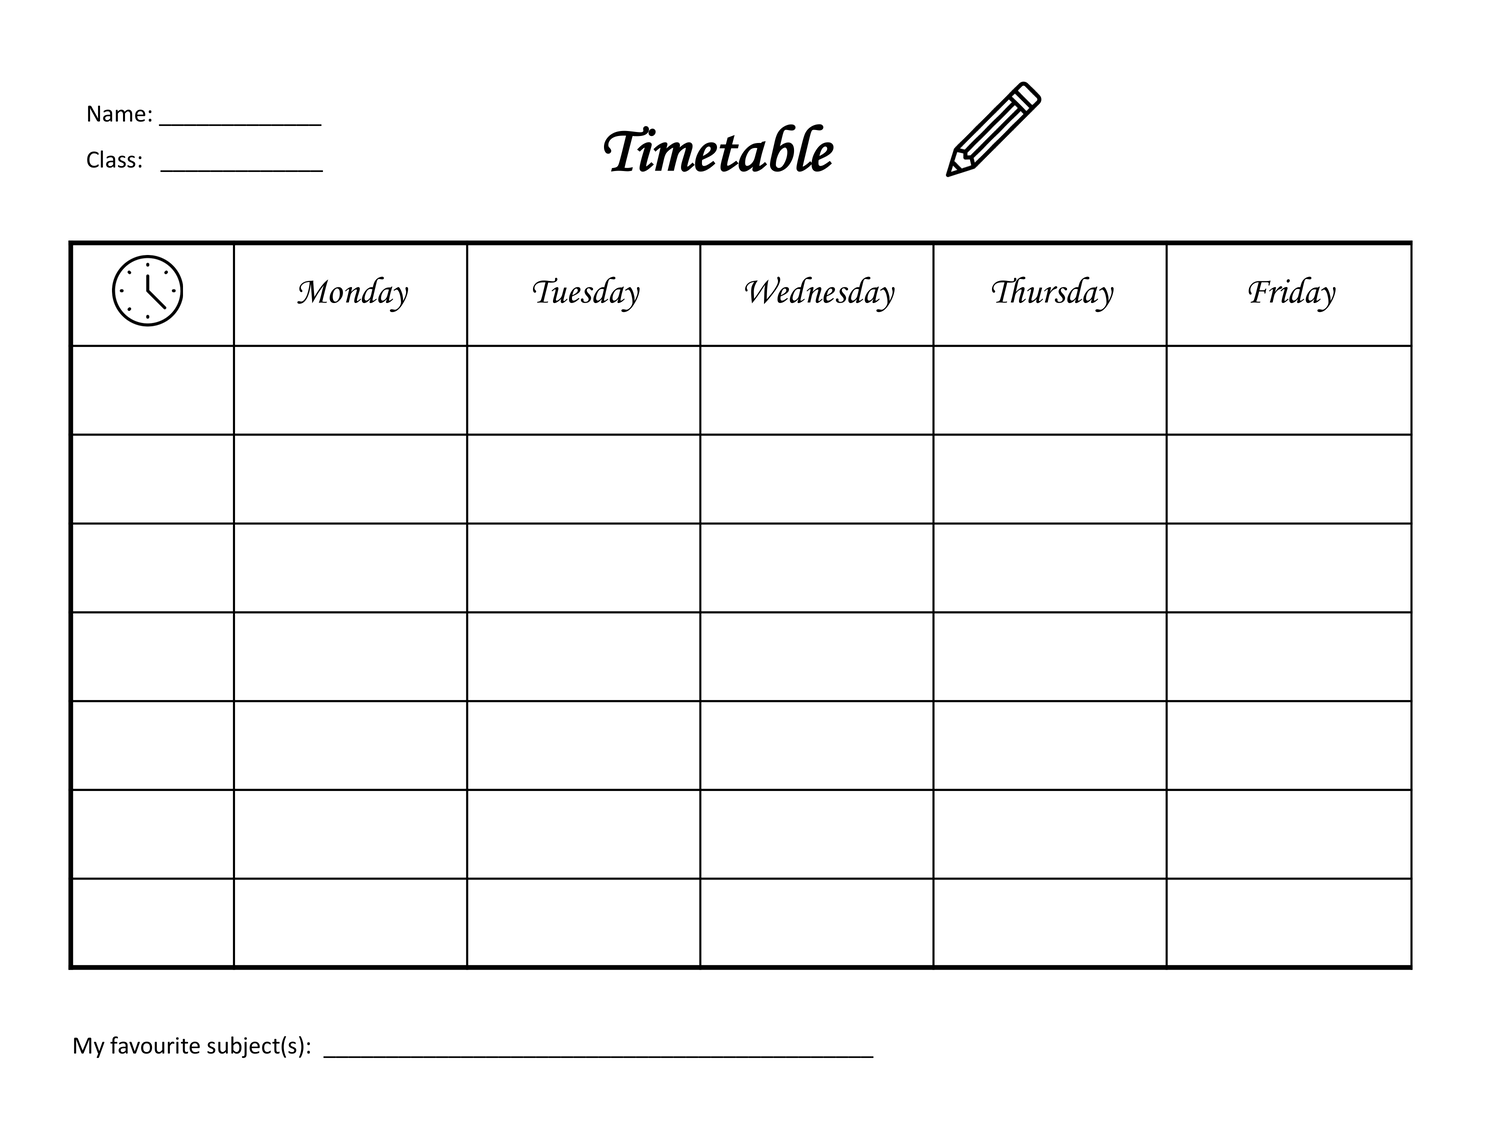 Timetable Stundenplan Englisch Unterrichtsmaterial In Den Fachern Englisch Fachubergreifendes Stundenplan Englischunterricht Unterrichtsmaterial